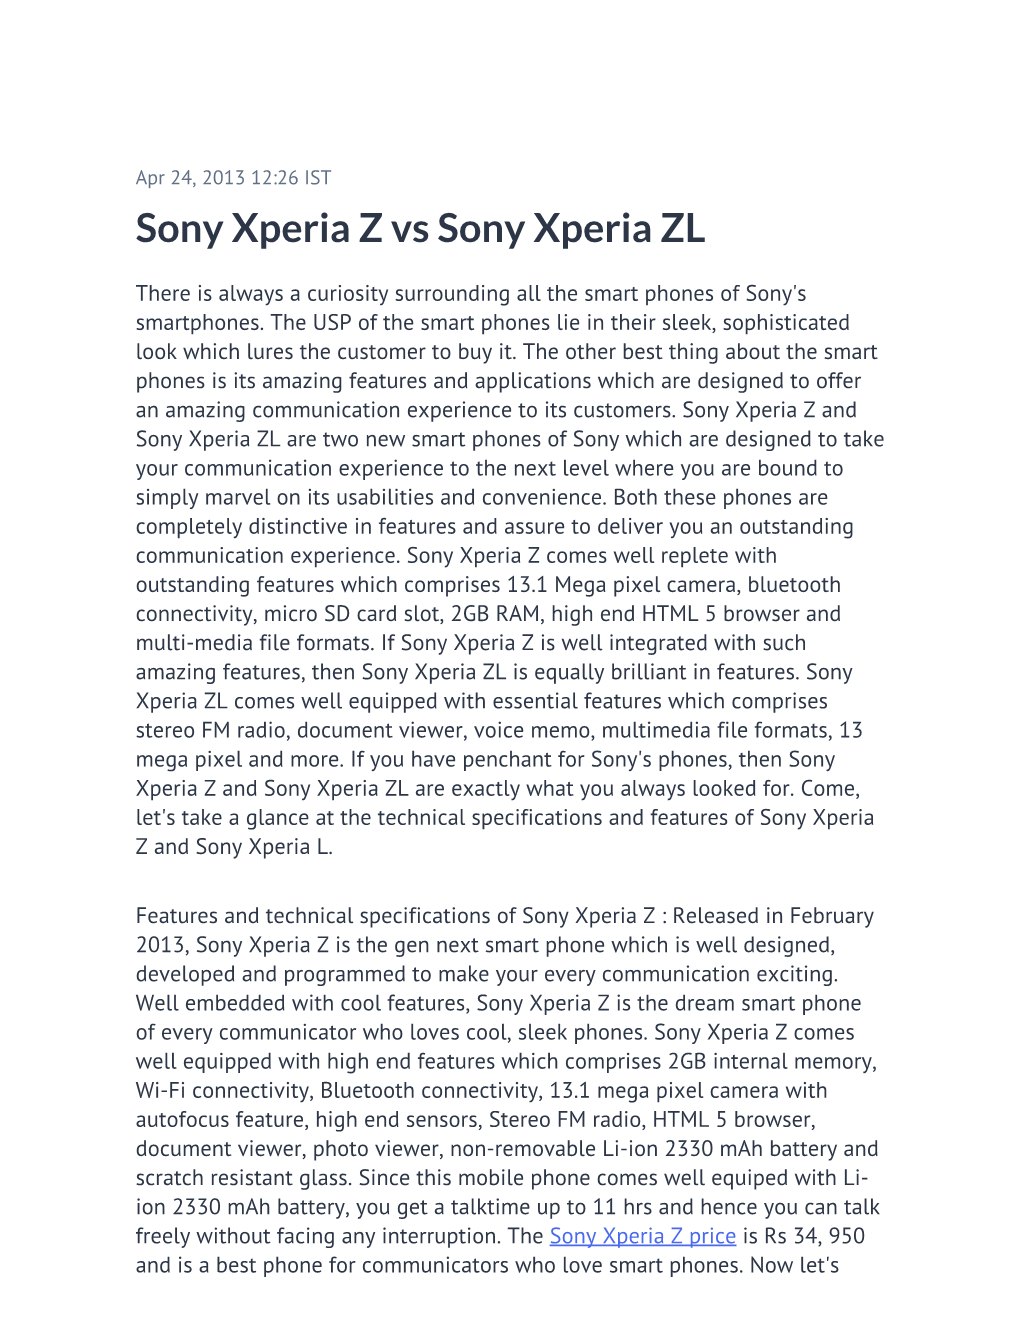 Sony Xperia Z Vs Sony Xperia ZL